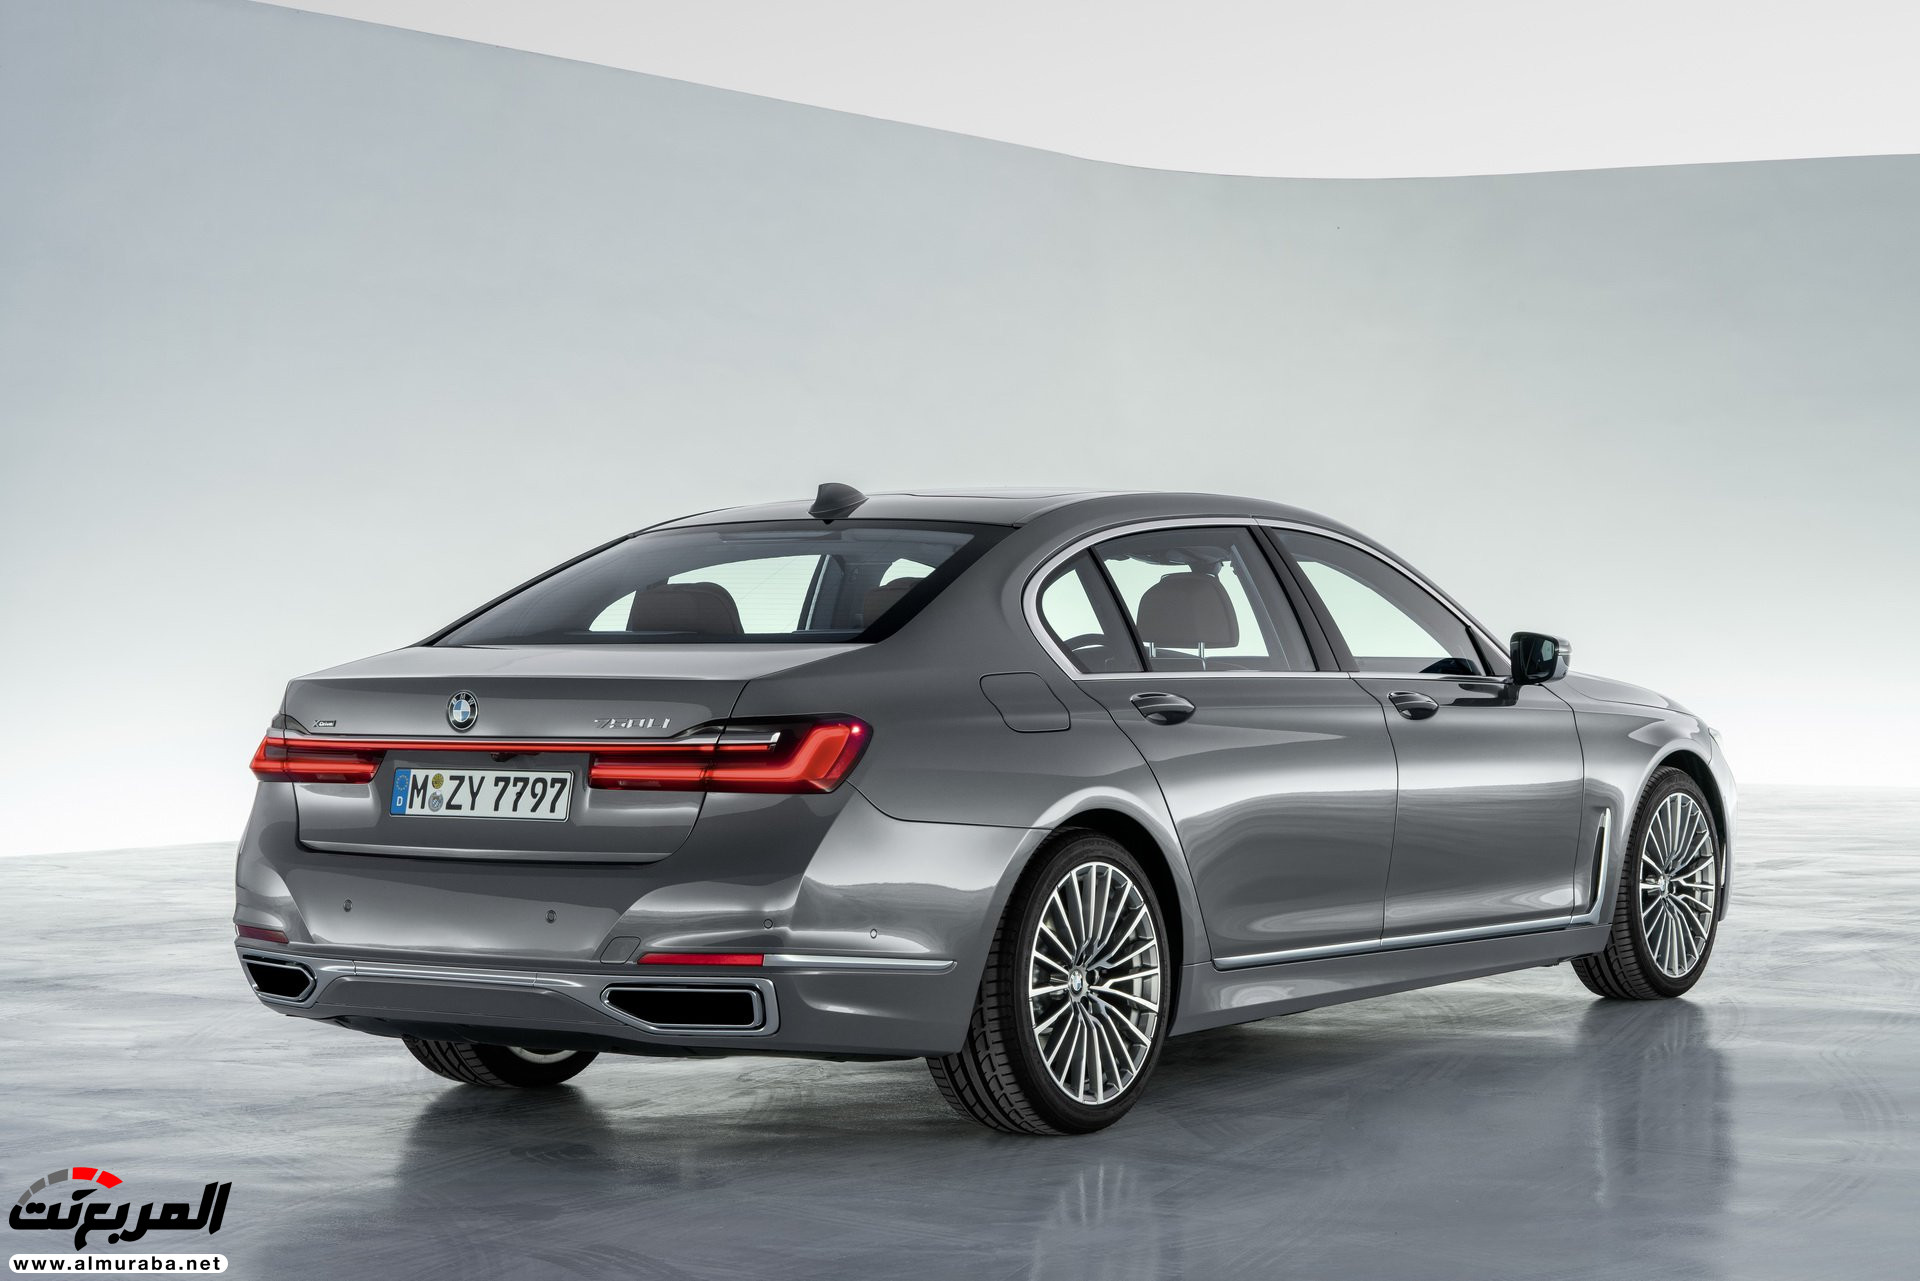 بي ام دبليو الفئة السابعة 2020 المحدثة تكشف نفسها رسمياً "صور ومواصفات" BMW 7 Series 233